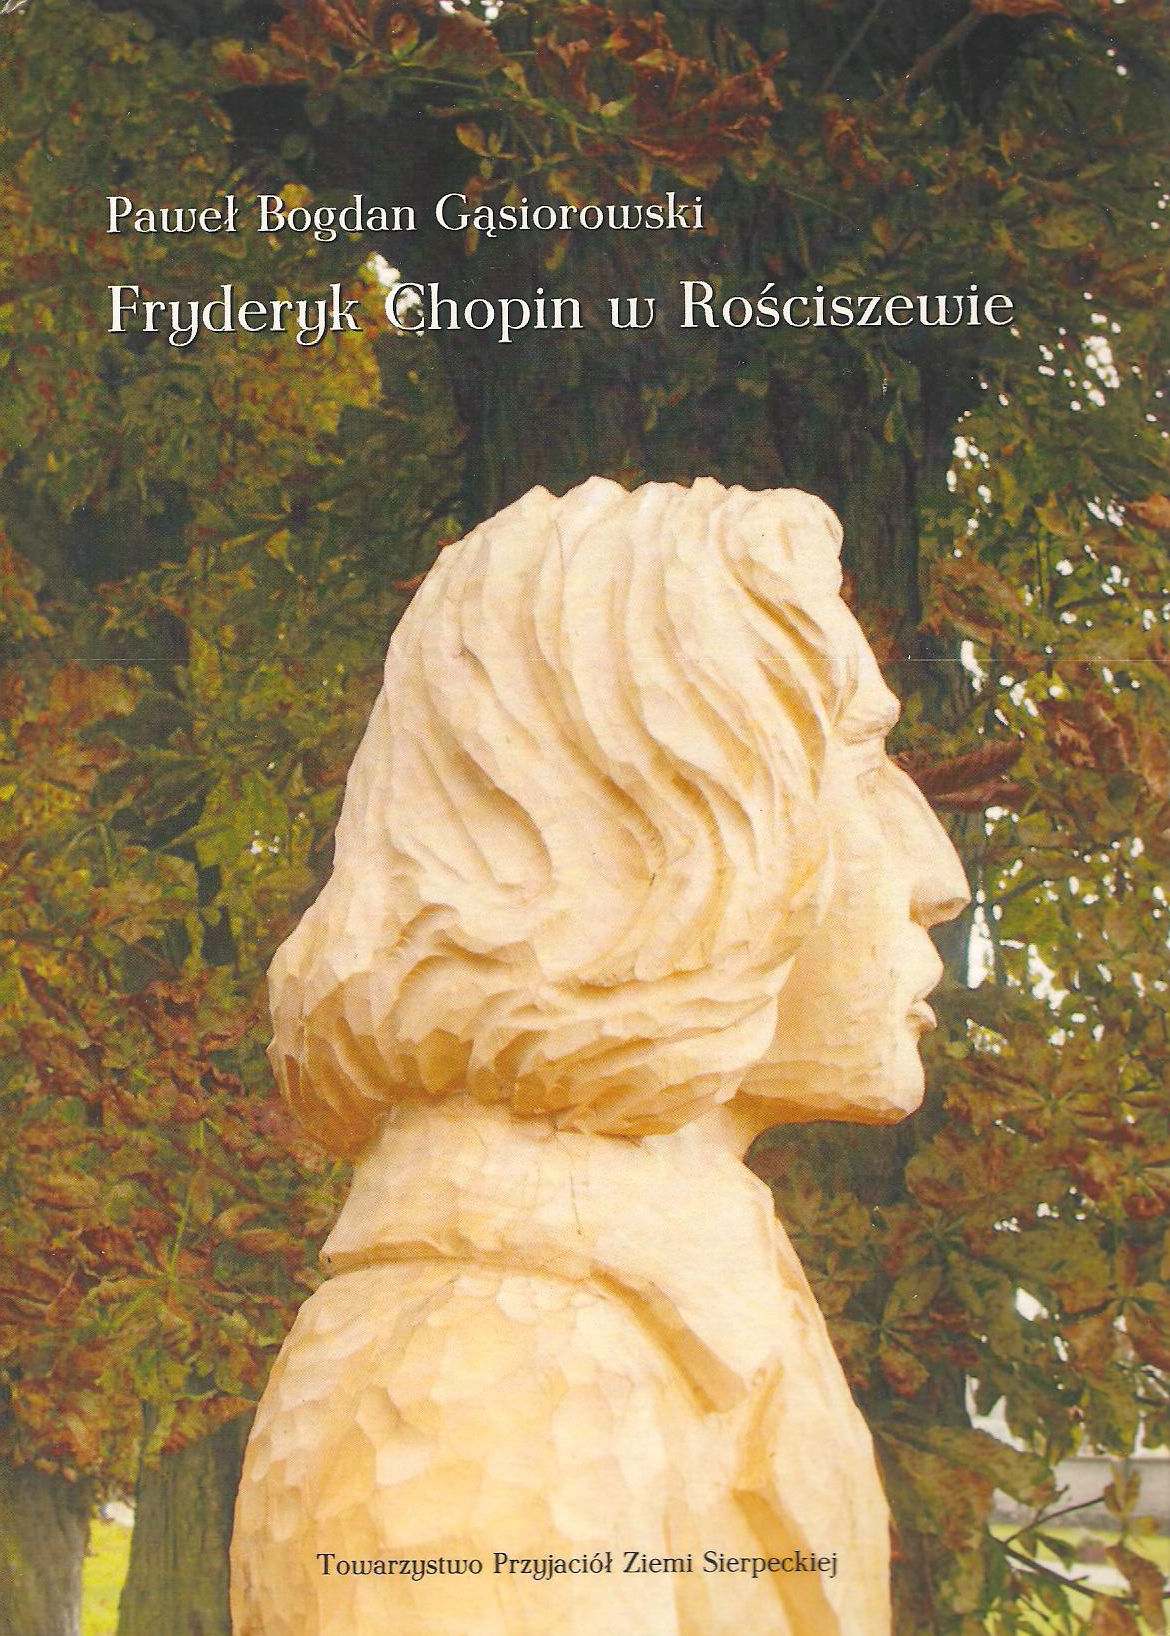 Pawe Bogdan Gsiorowski: Fryderyk Chopin w Rociszewie